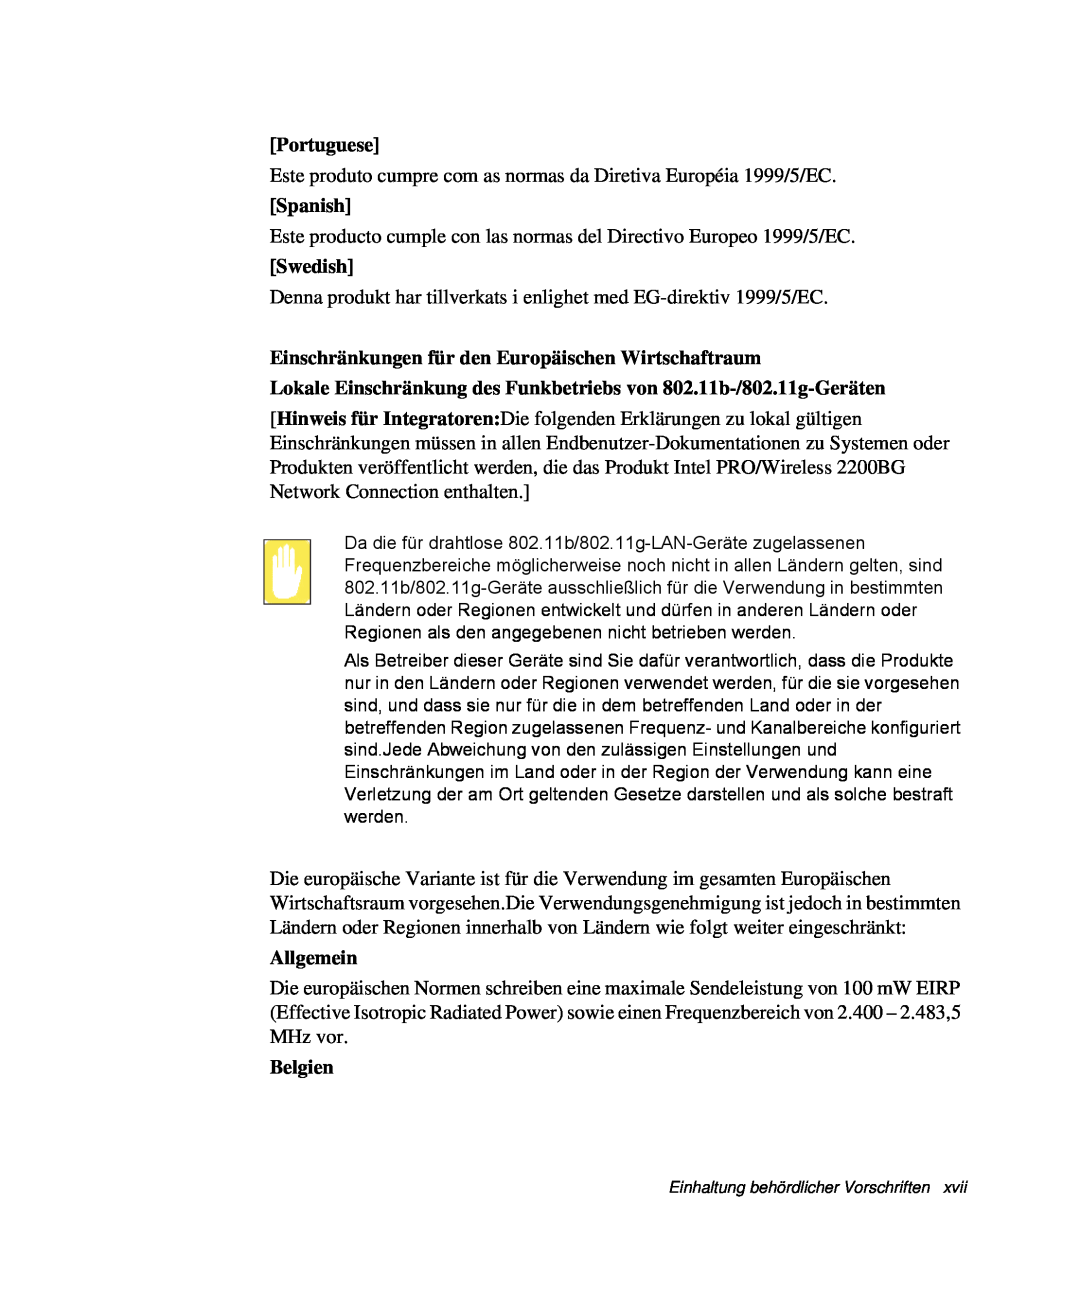 Samsung NP-R40/K00/SEG manual Portuguese, Spanish, Swedish, Einschränkungen für den Europäischen Wirtschaftraum, Allgemein 